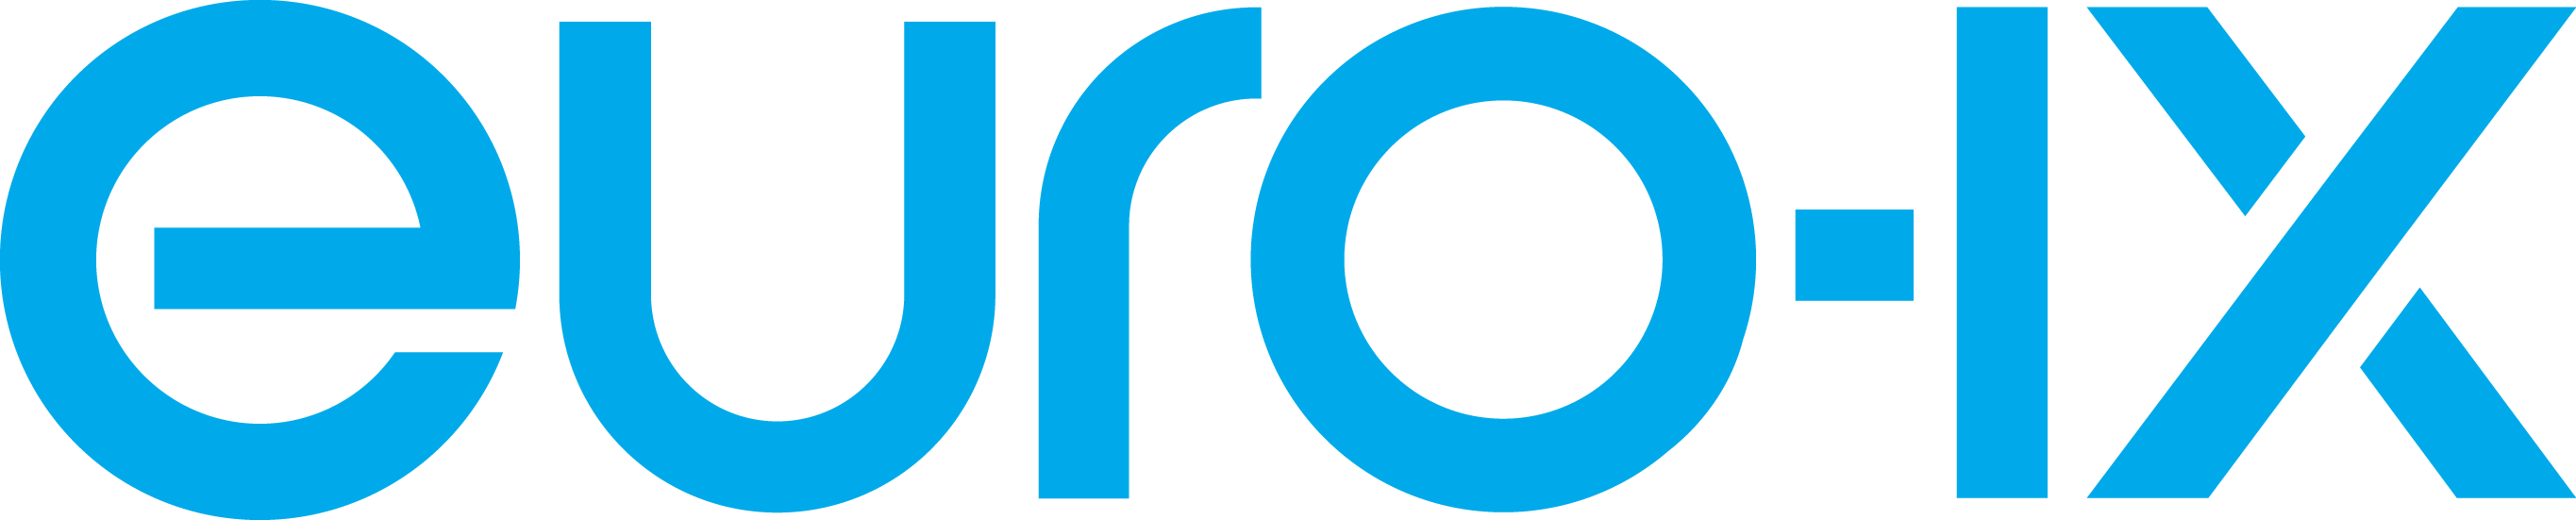 euroix-logo